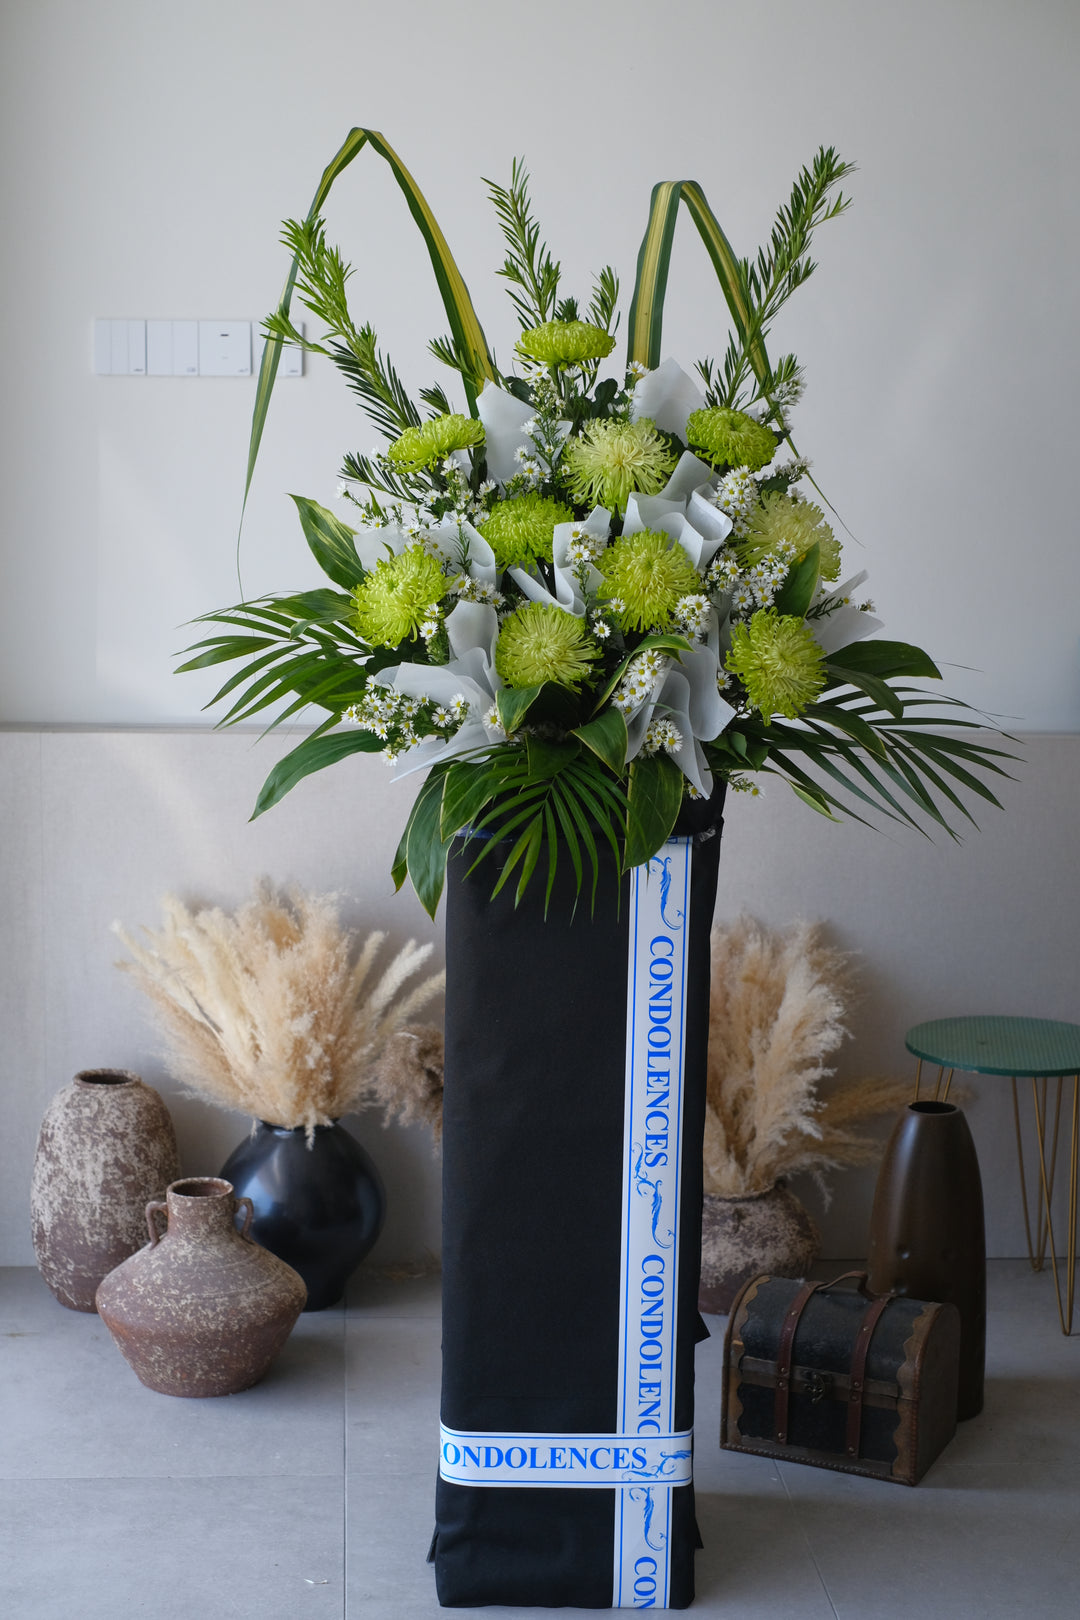 condolences flower penang, flower arrangements ideas to show your grief and empathy, available at florist near me, bouquet shop near me